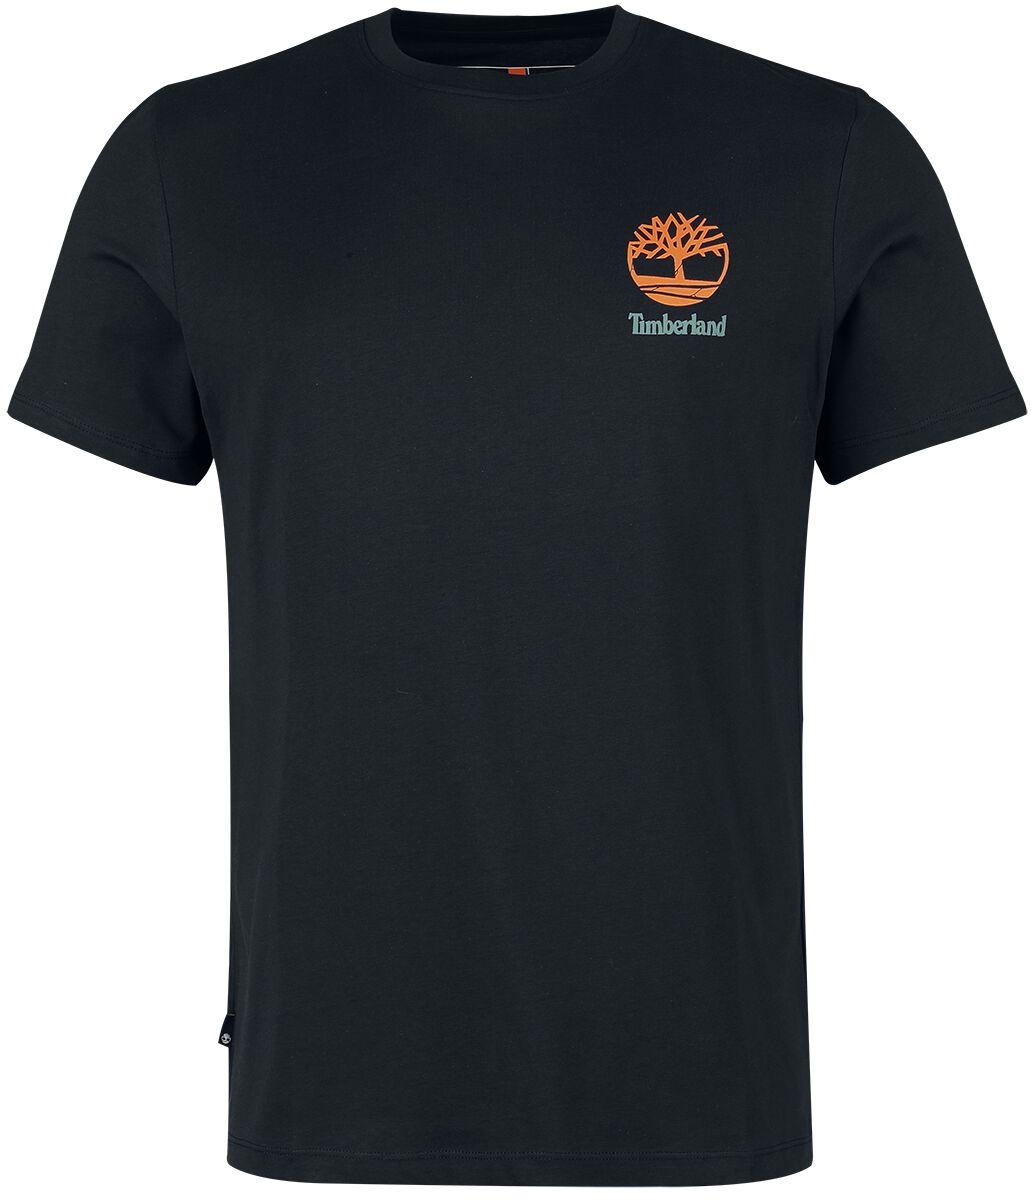 Timberland T-Shirt - Back Graphic Short Sleeve Tee - S bis XXL - für Männer - Größe XXL - schwarz